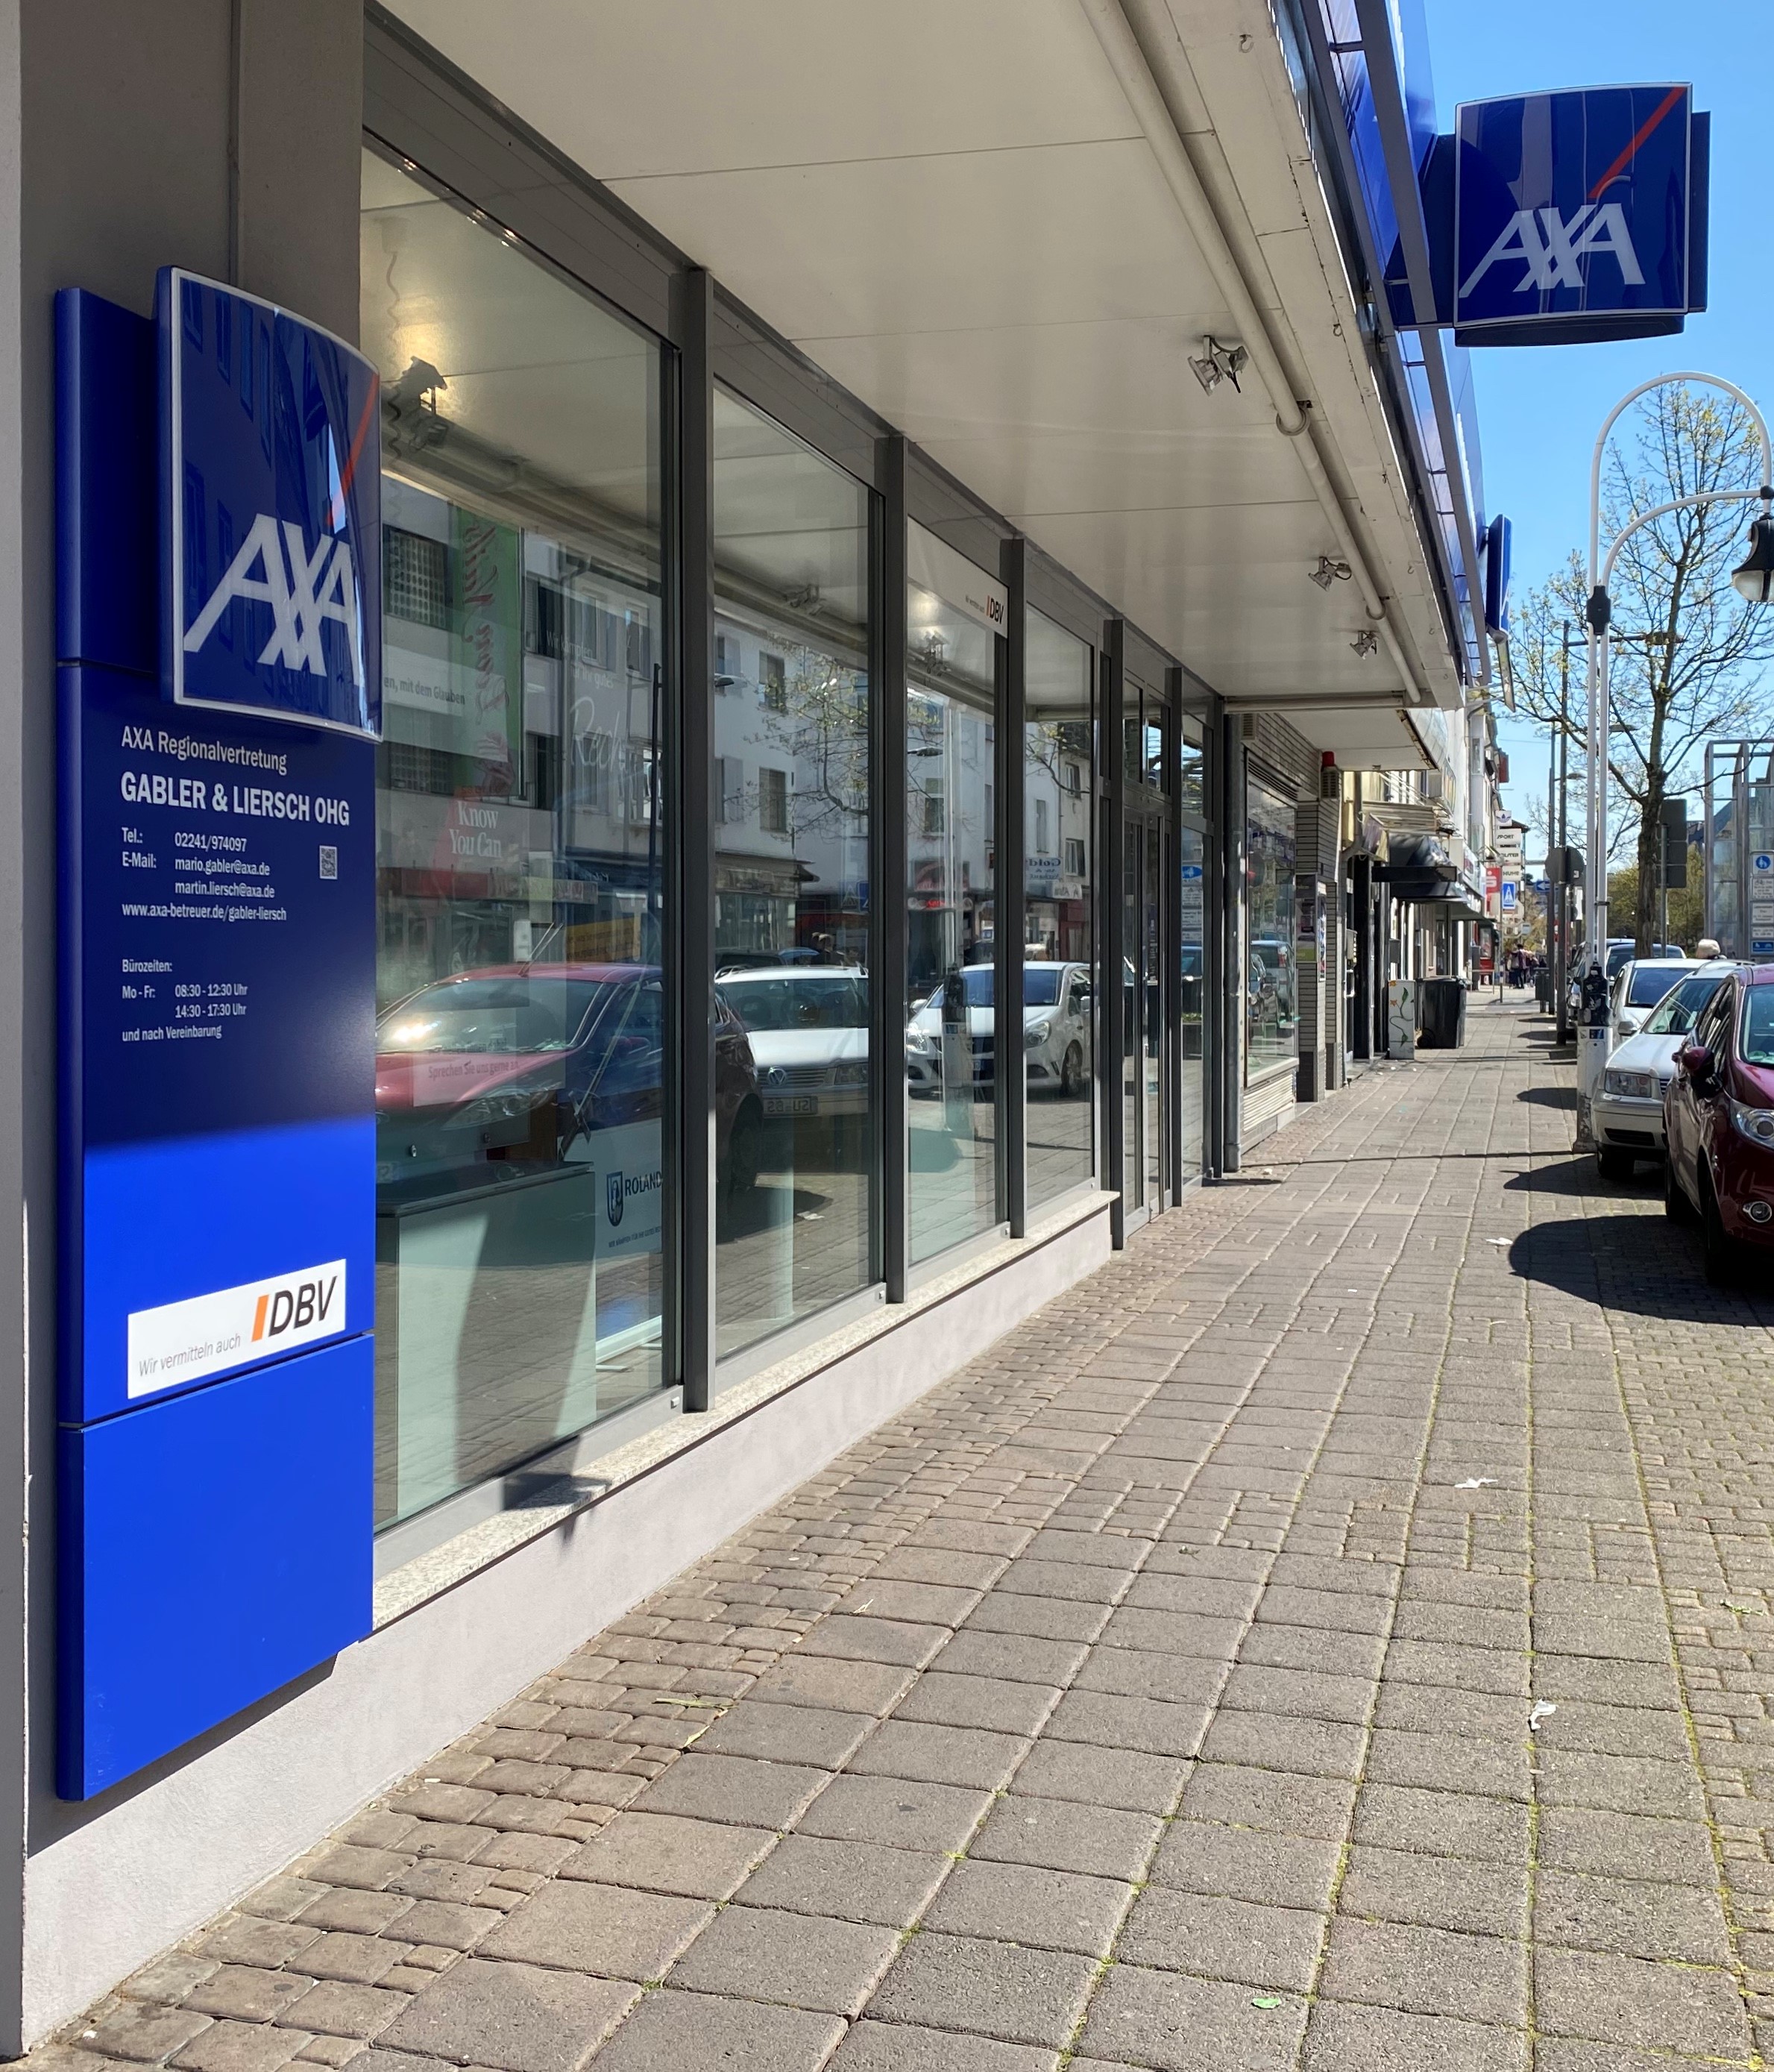 AXA Versicherungen Gabler & Liersch oHG, Kölner Straße 109 in Troisdorf